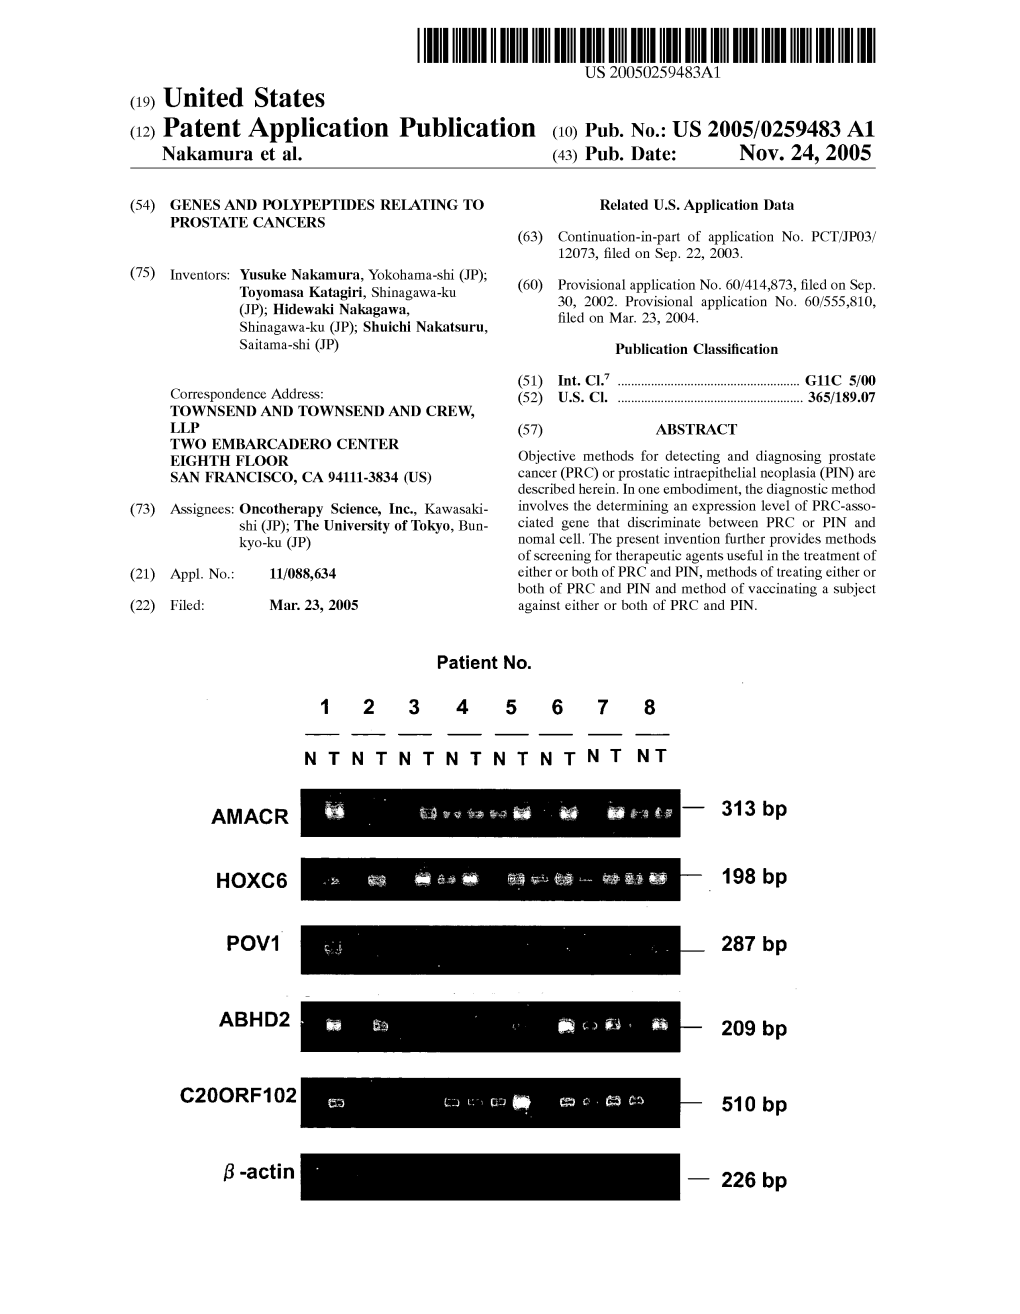 (12) Patent Application Publication (10) Pub. No.: US 2005/0259483 A1 Nakamura Et Al